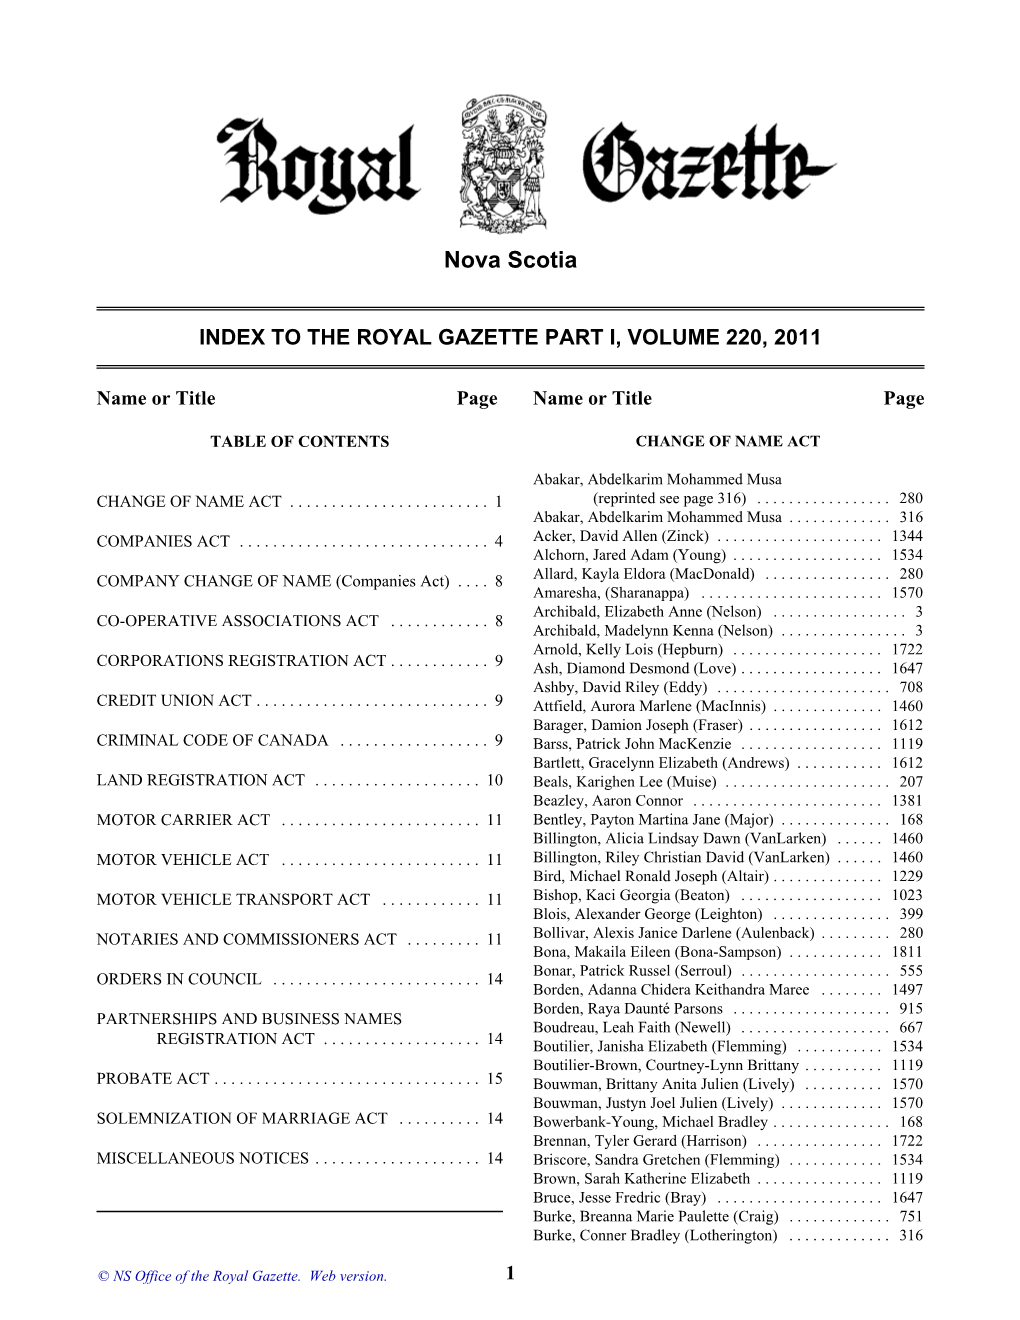 NS Royal Gazette Part I